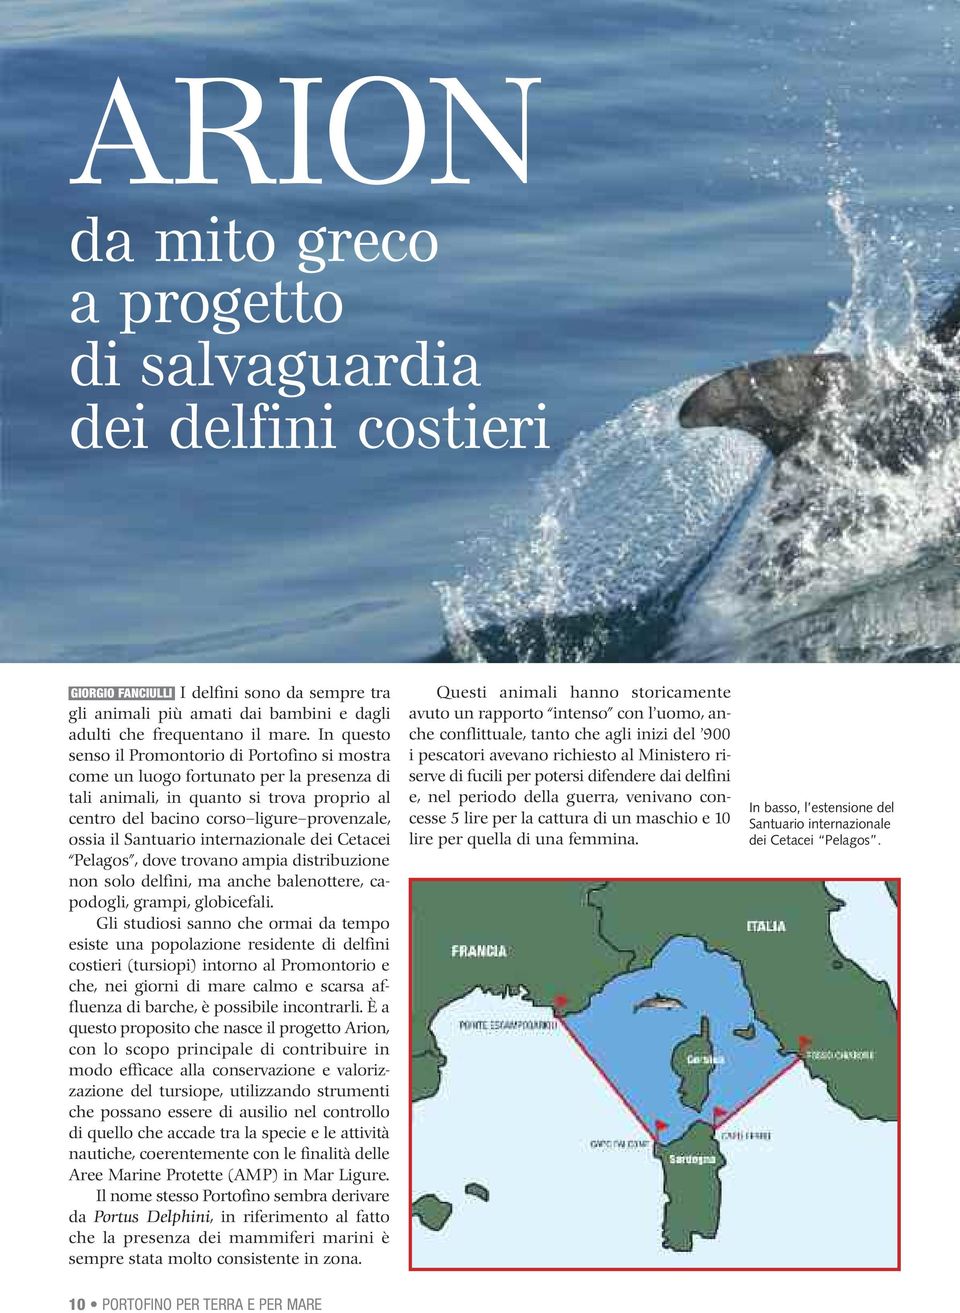 Santuario internazionale dei Cetacei Pelagos, dove trovano ampia distribuzione non solo delfini, ma anche balenottere, capodogli, grampi, globicefali.